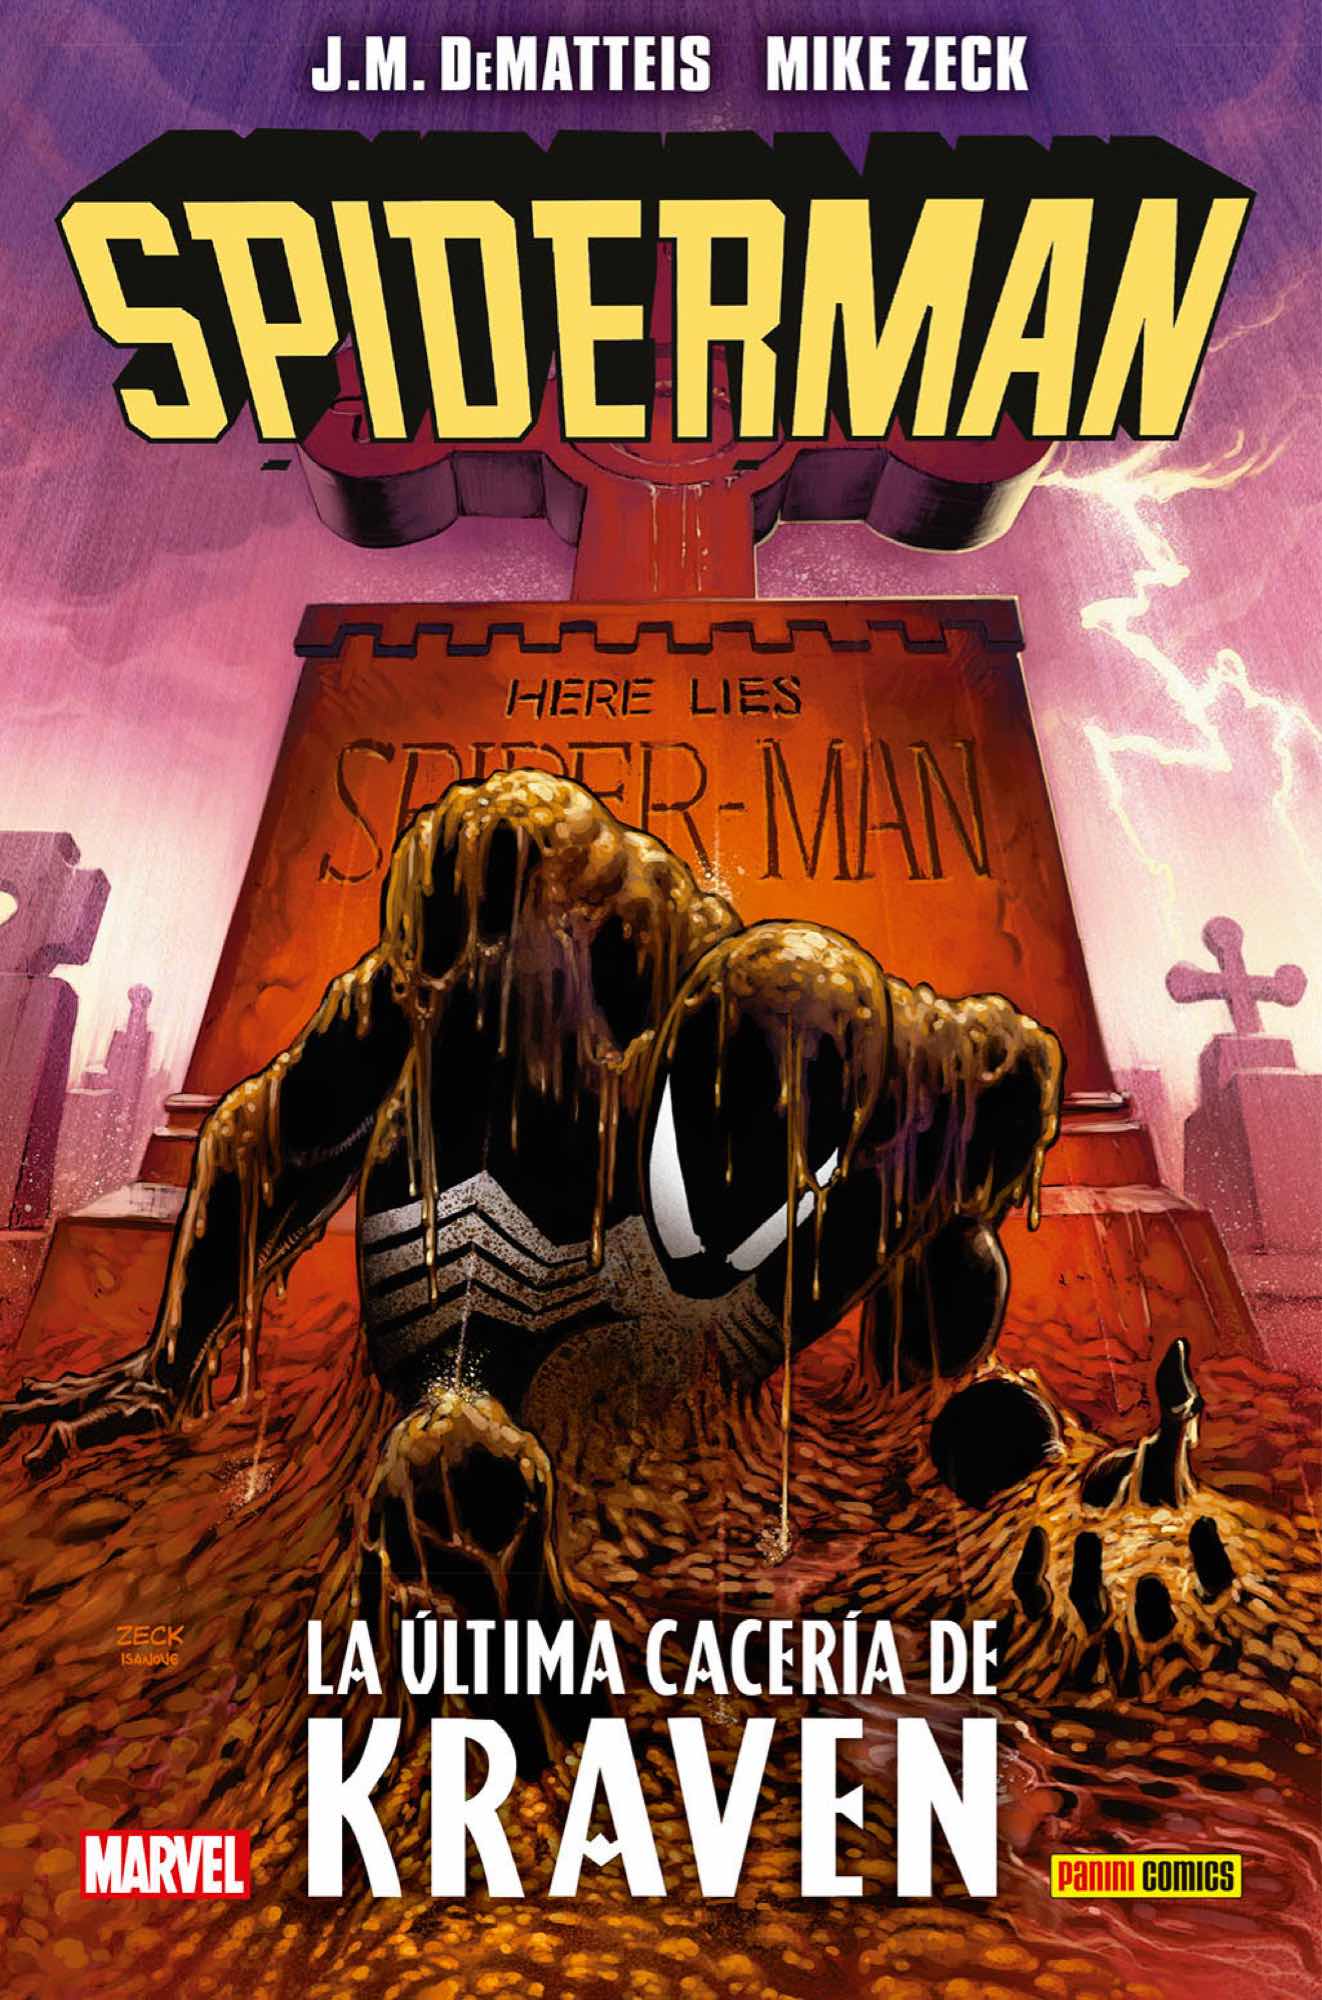 Spiderman: La última cacería de Kraven | Universo Funko, Planeta de cómics/mangas, juegos de ...